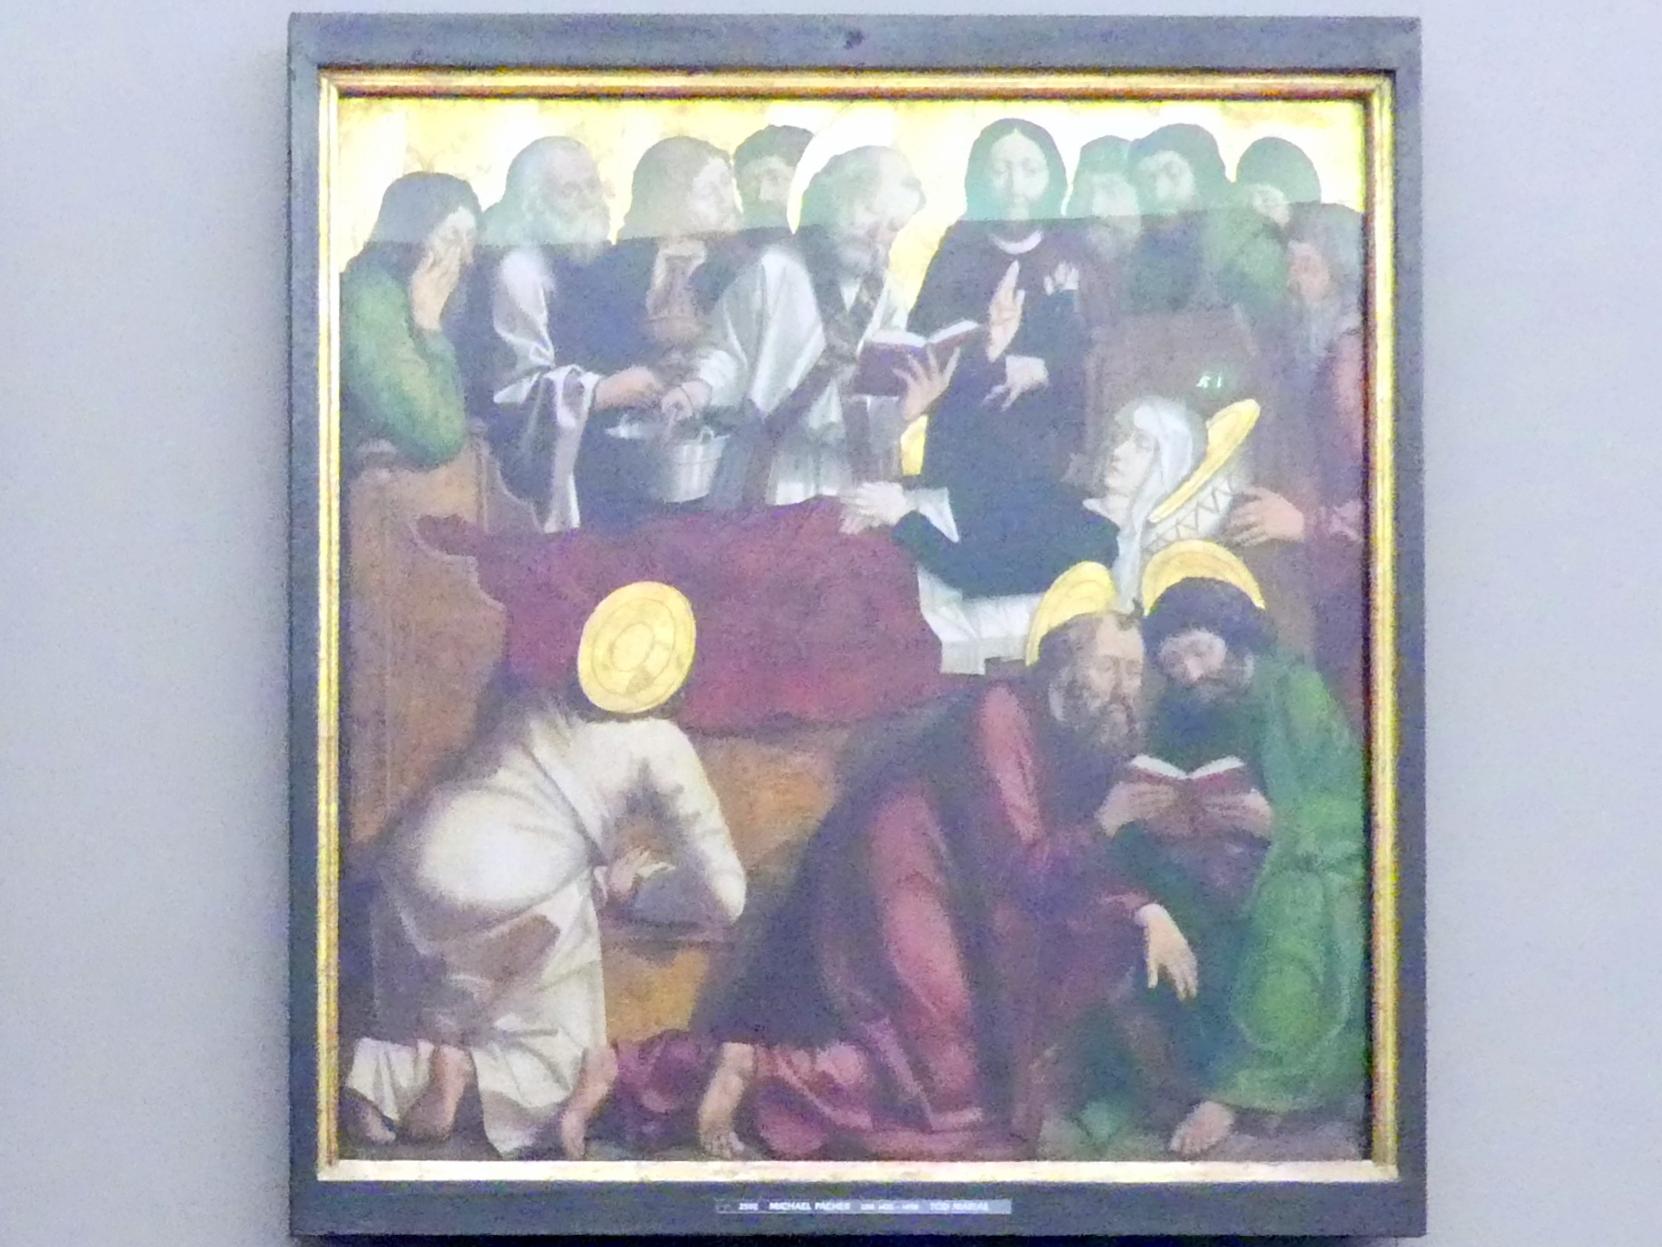 Michael Pacher (1461–1497), Innenseite des Schreinflügels des Hochaltars 'Tod Mariens', St. Lorenzen, Pfarrkirche St. Laurentius, jetzt München, Alte Pinakothek, Erdgeschoss Saal II, 1465, Bild 1/3